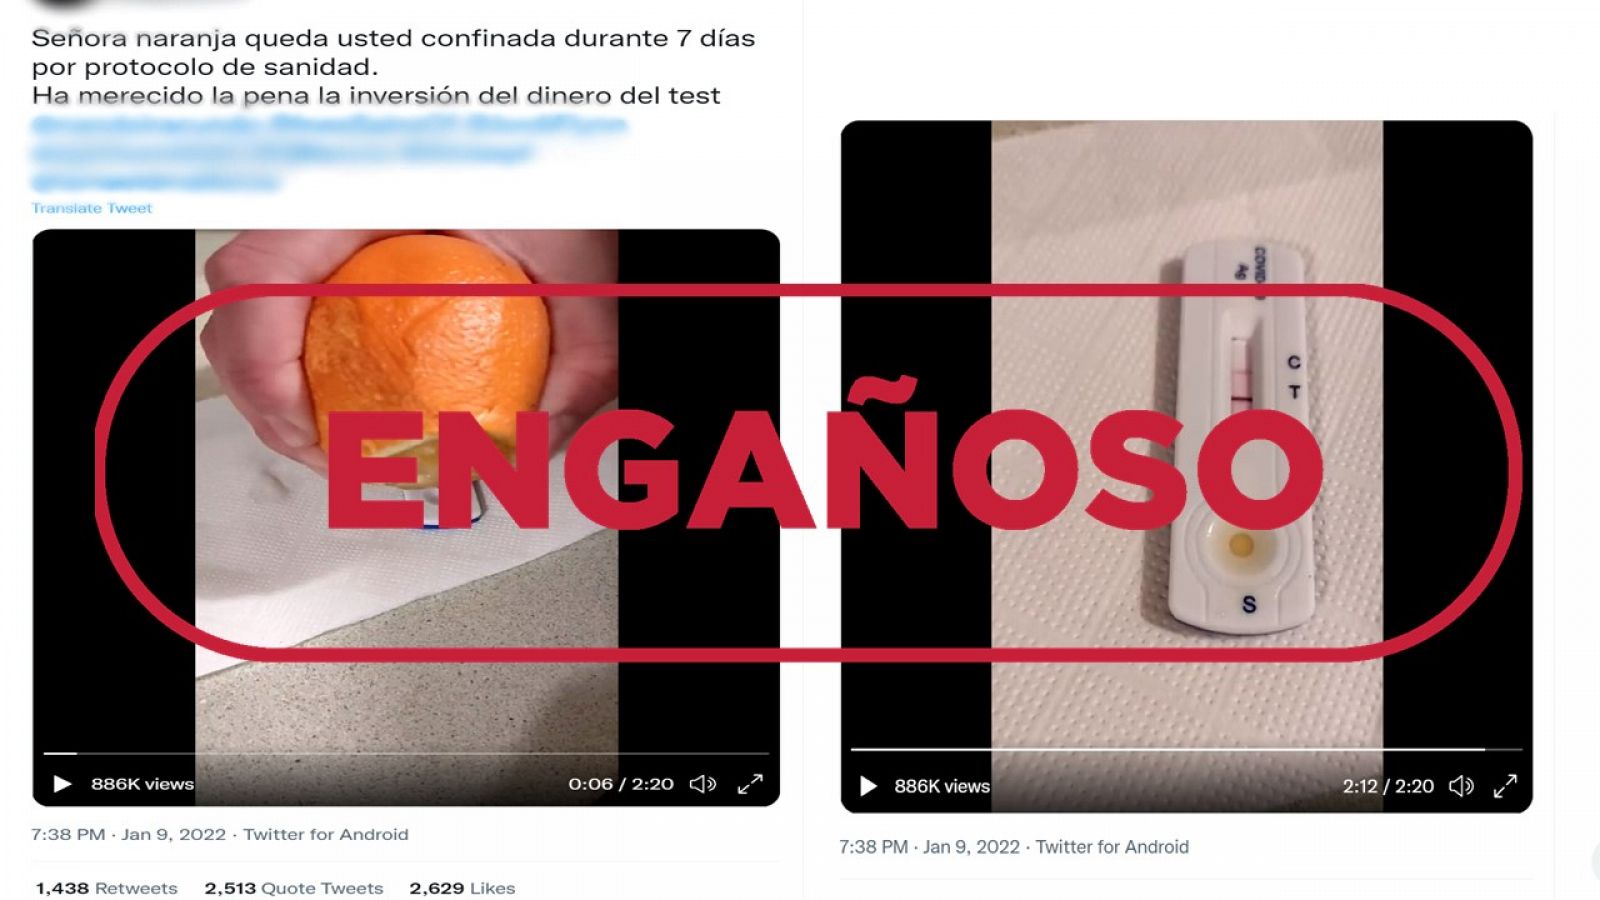 Mensaje de Twitter con el vídeo del zumo de naranja en un test de antígenos, con el sello engañoso de VerificaRTVE